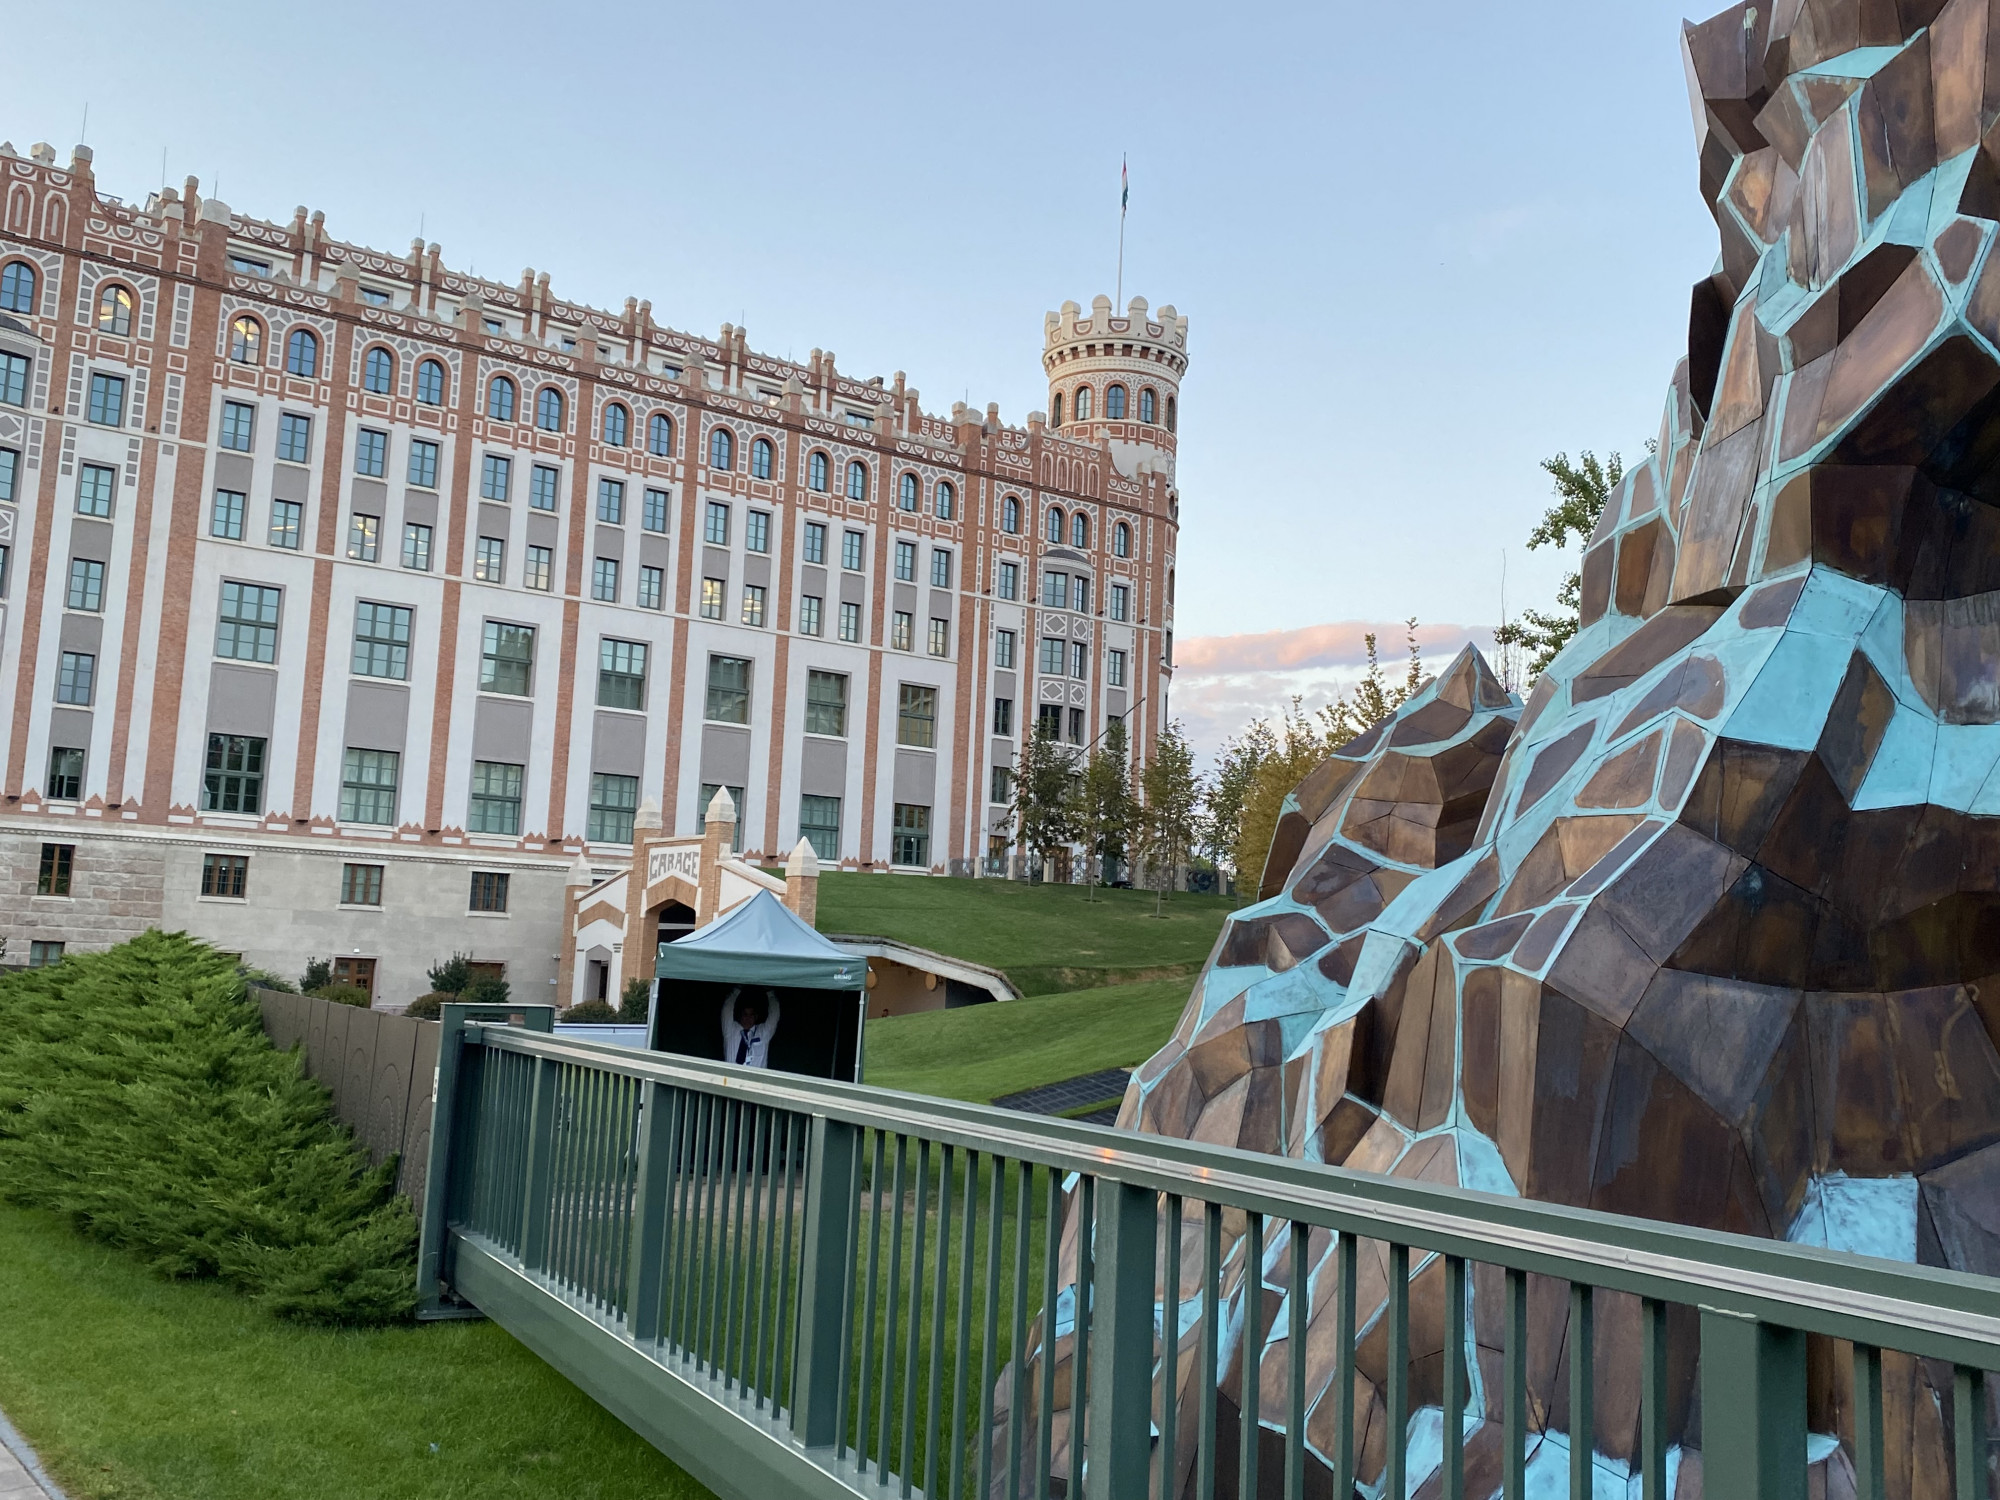 Az MNB azt állítja, hogy nem is őrzik külön a Csodaszarvas-szobrot, bár akárki megnézheti, hogy kilenc hónapja ott áll az őr sátra